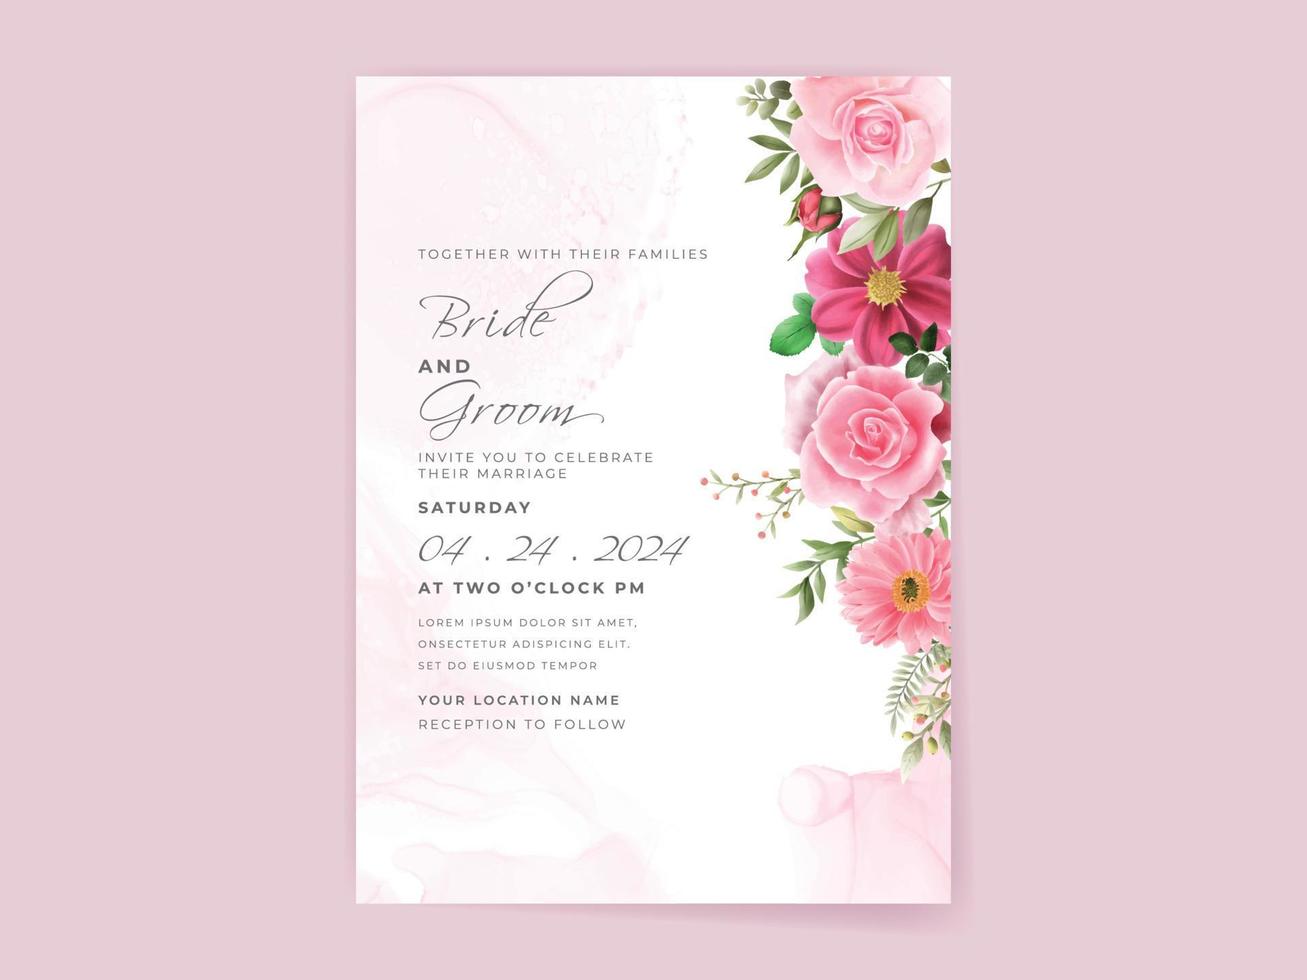 set di biglietti d'invito per matrimoni con bellissimi fiori rosa vettore